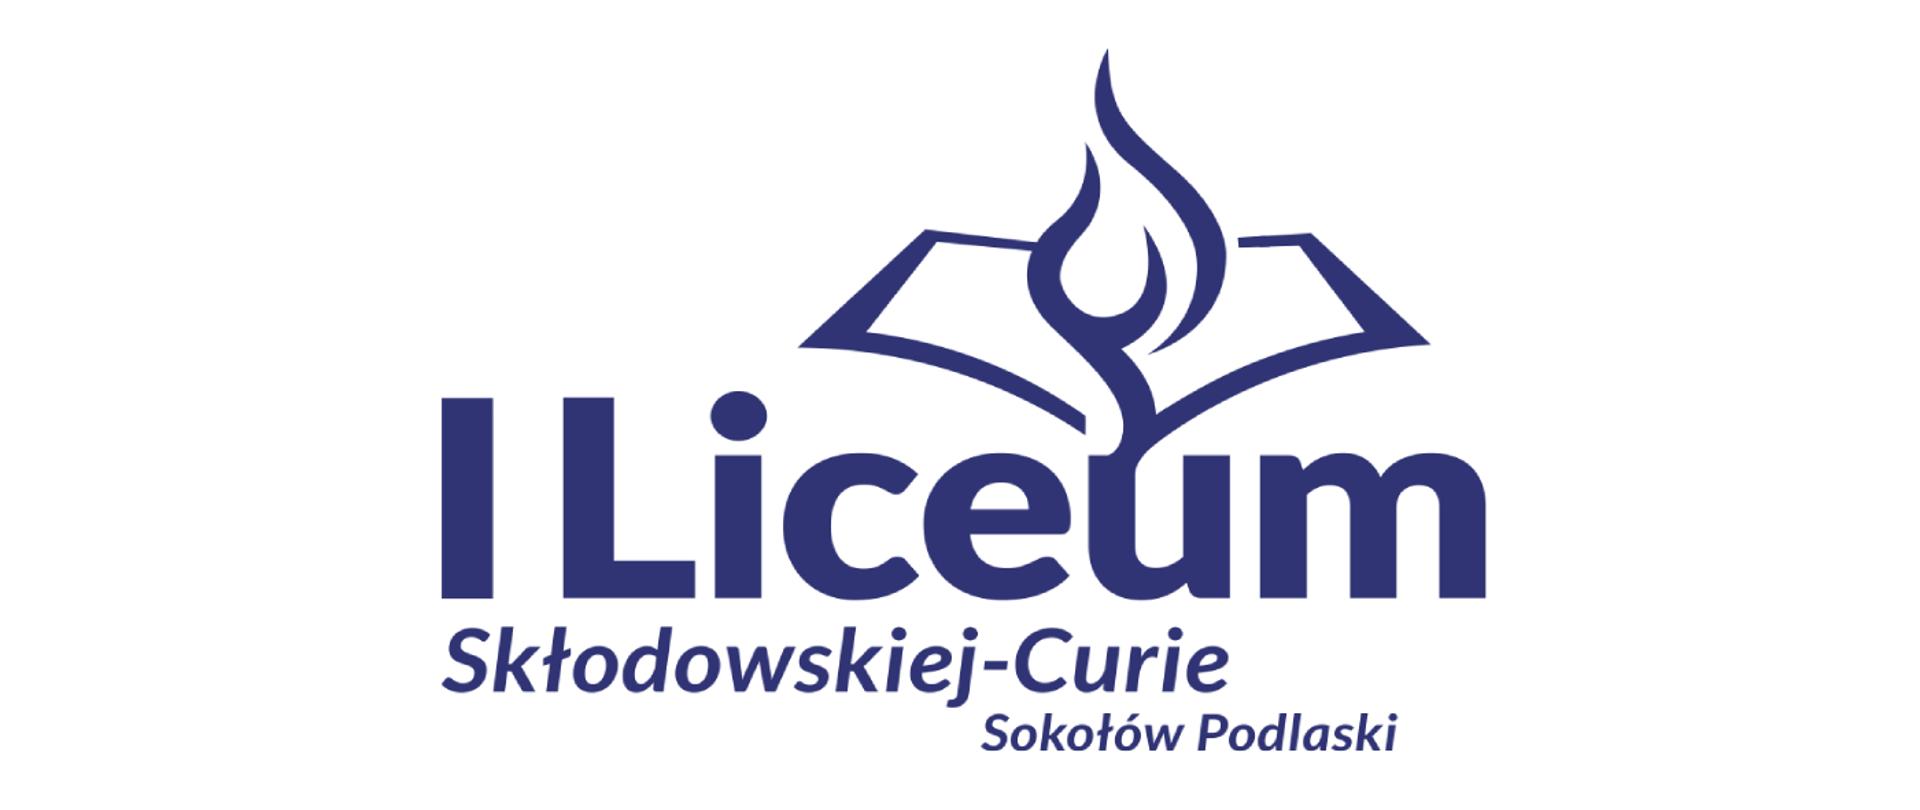 Granatowe Logo I Liceum Ogólnokształcącego w Sokołowie Podlaskim. Górną część stanowi kontur otwartej książki z płomieniem. Pod spodem duży napis I Liceum, a poniżej cieńszą czcionką Skłodowskiej - Curie. Na samym dole Sokołów Podlaski.